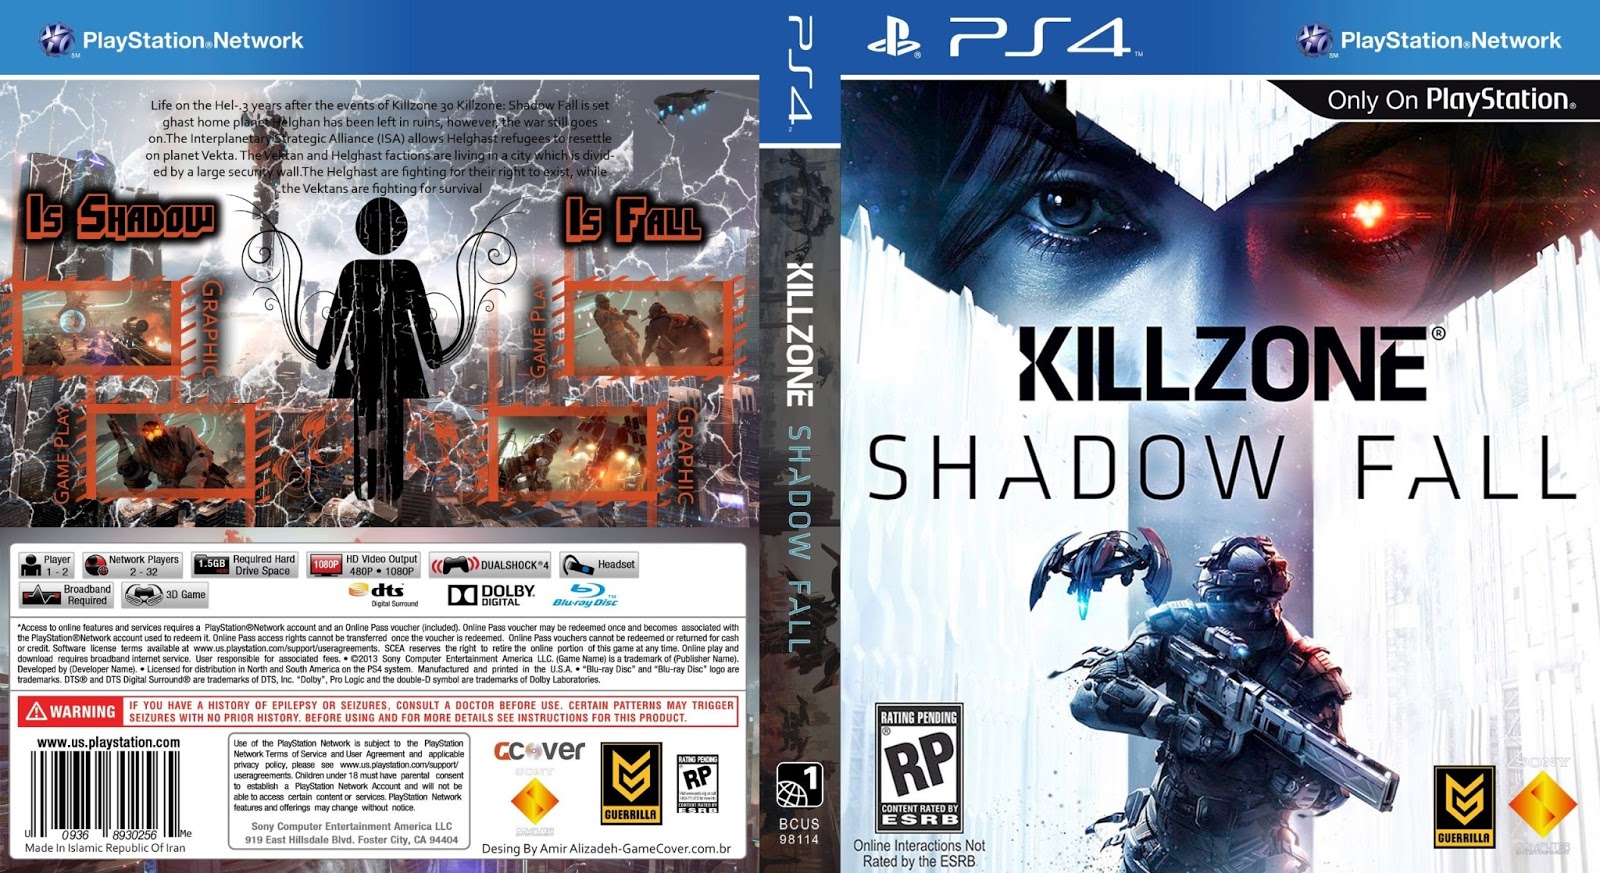 Killzone Shadow Fall ( PS4 ) - Dublado PT BR Parte 5  Os Helghast  [  Detonado ] 